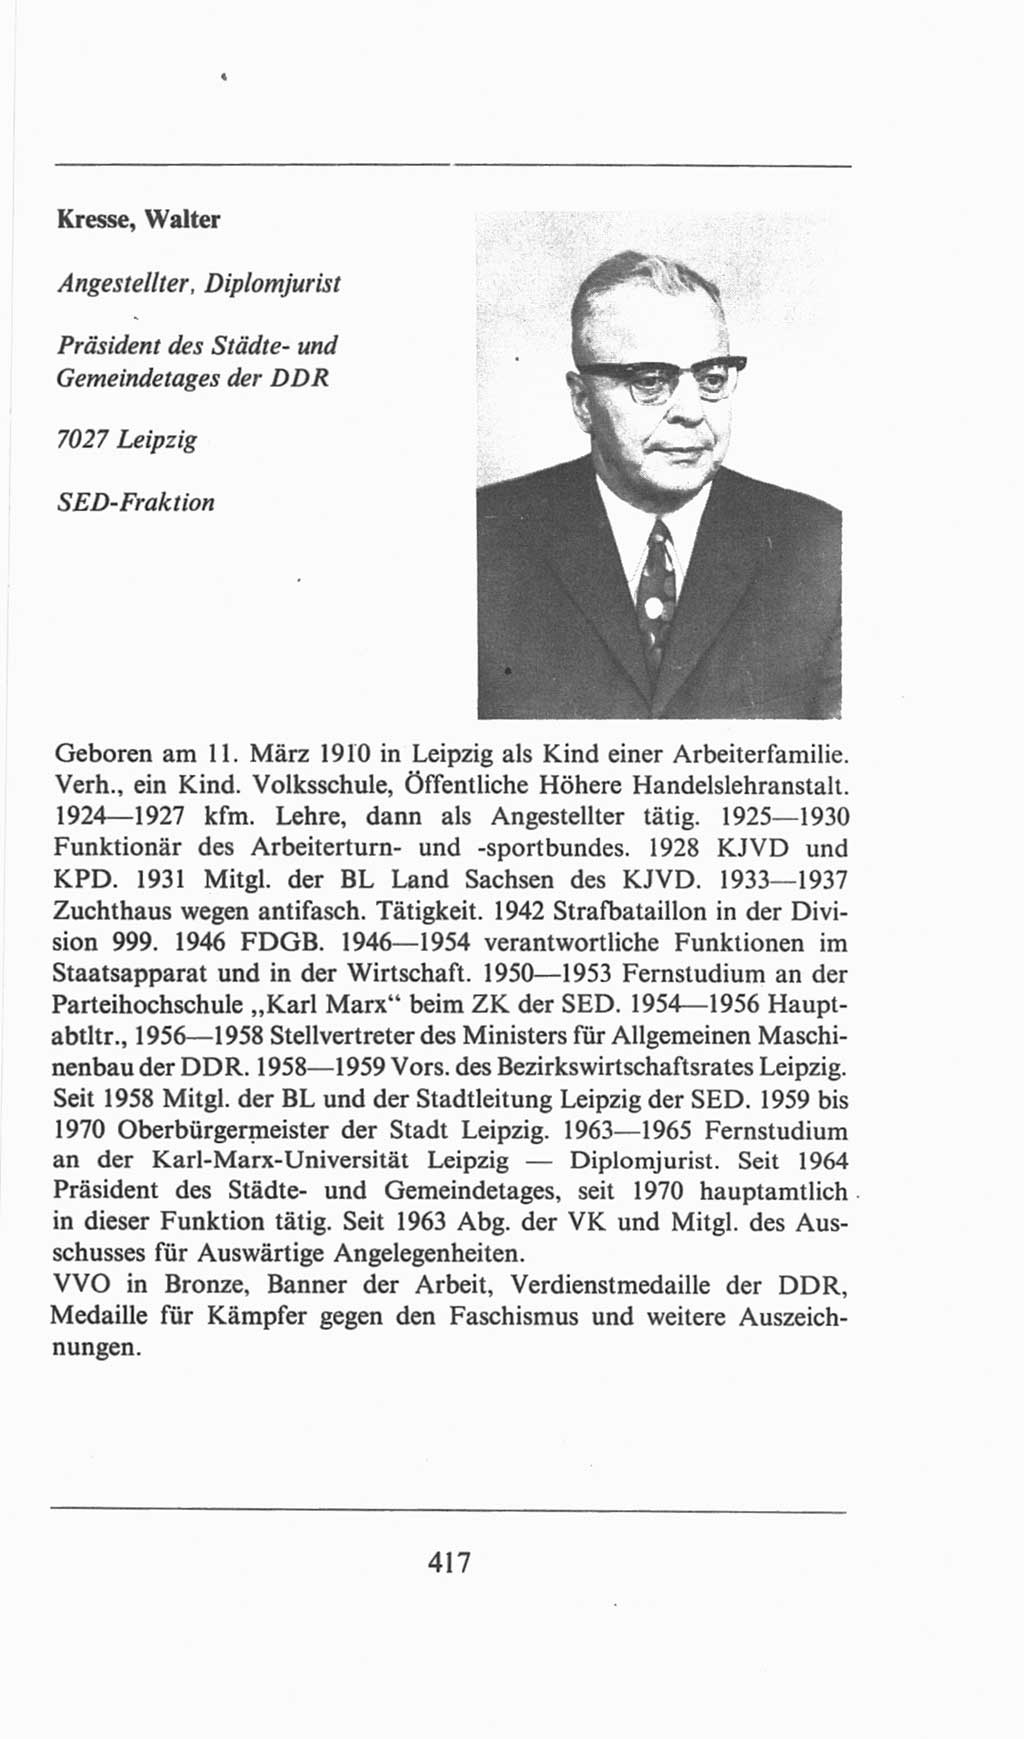 Volkskammer (VK) der Deutschen Demokratischen Republik (DDR), 6. Wahlperiode 1971-1976, Seite 417 (VK. DDR 6. WP. 1971-1976, S. 417)